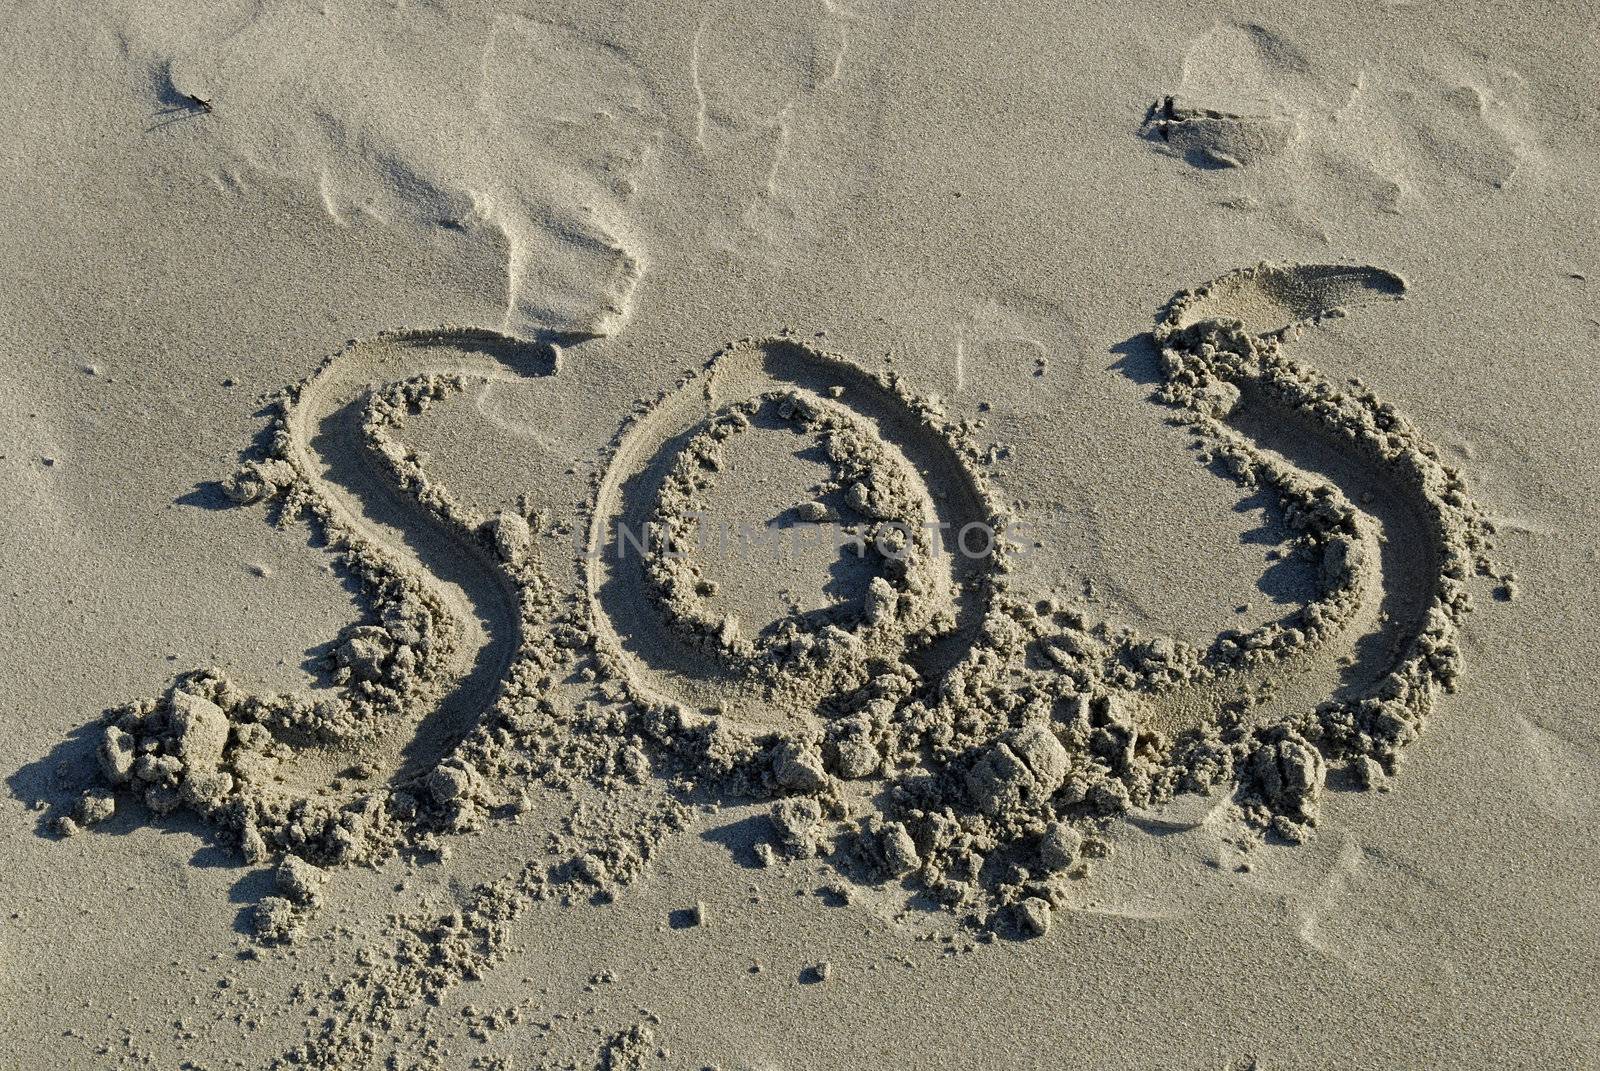 SOS Inscription written in sand